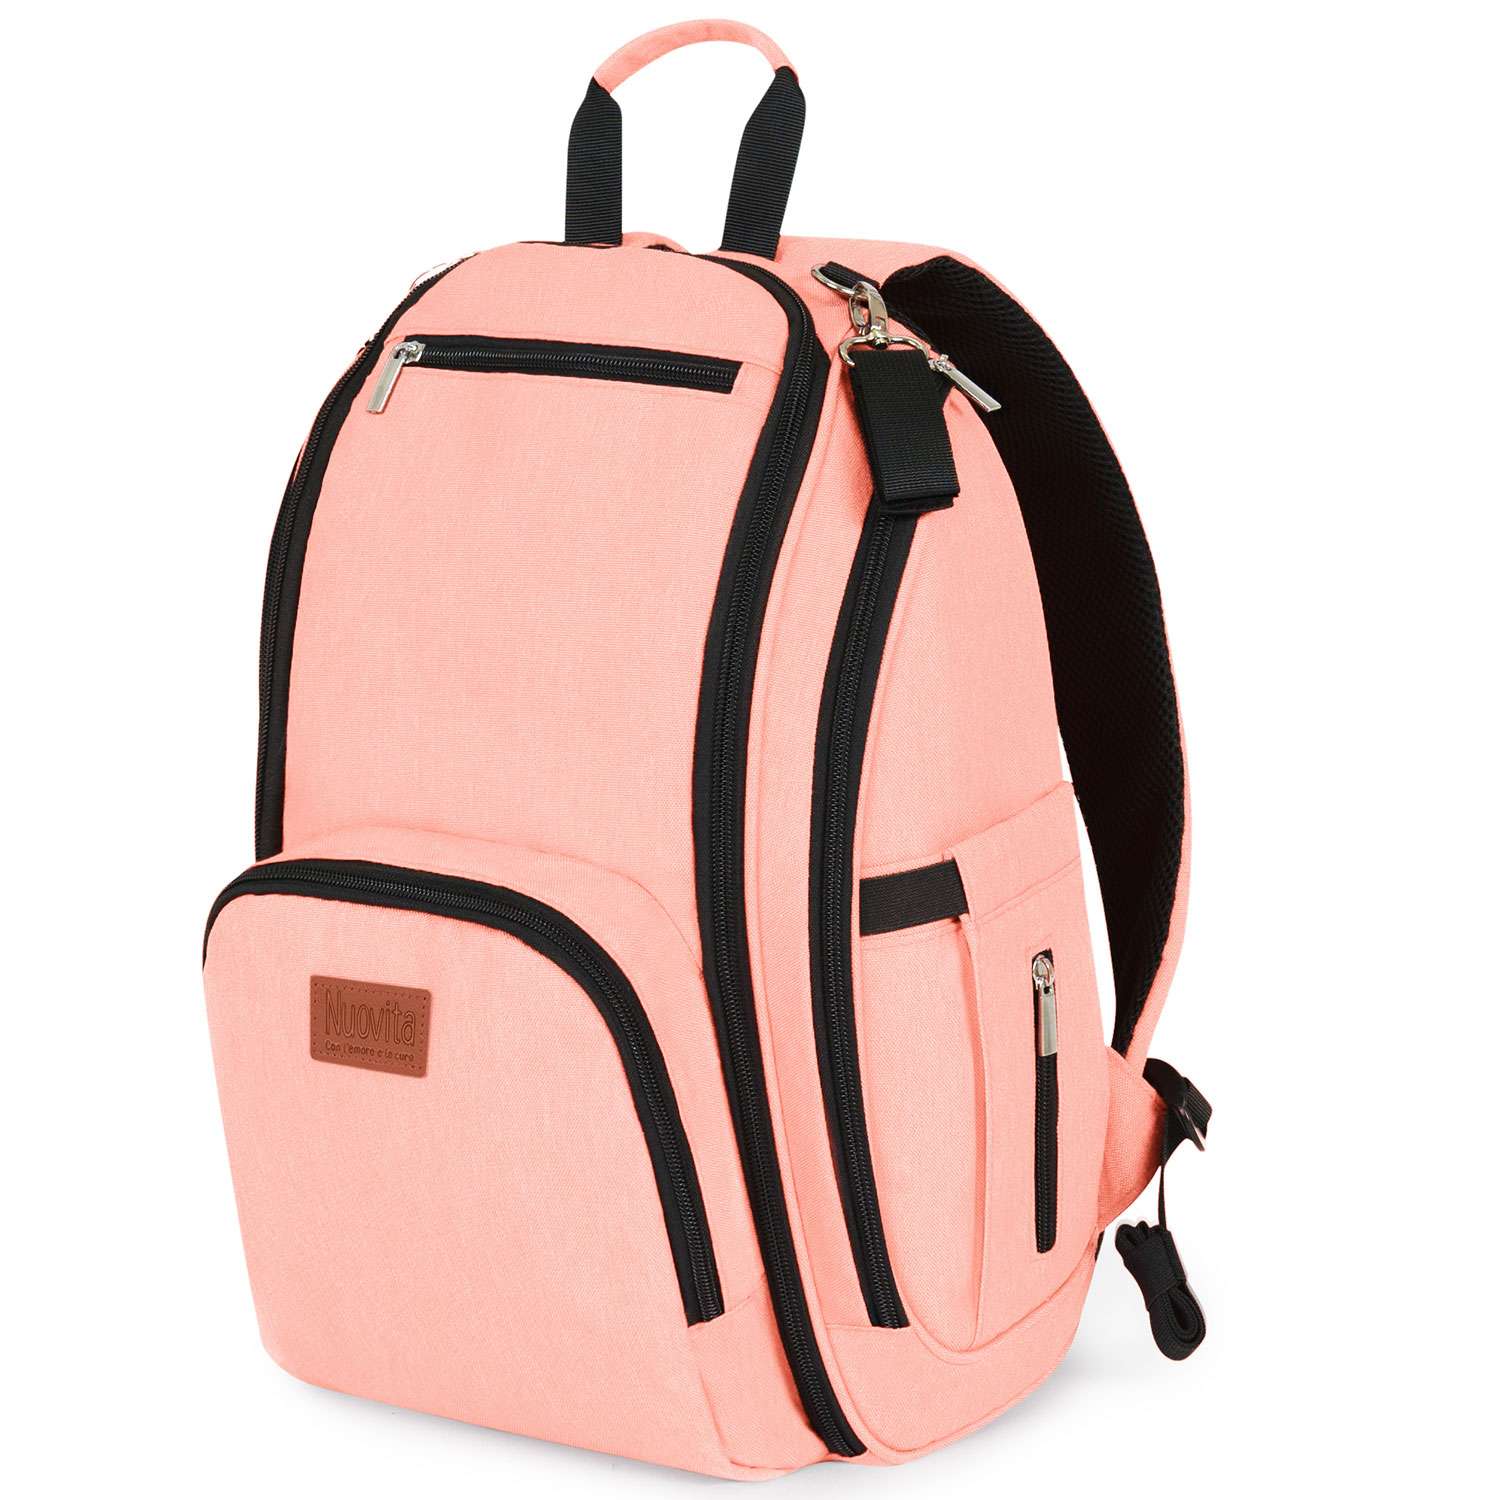 Рюкзак для мамы Nuovita CAPCAP via Розовый - фото 1